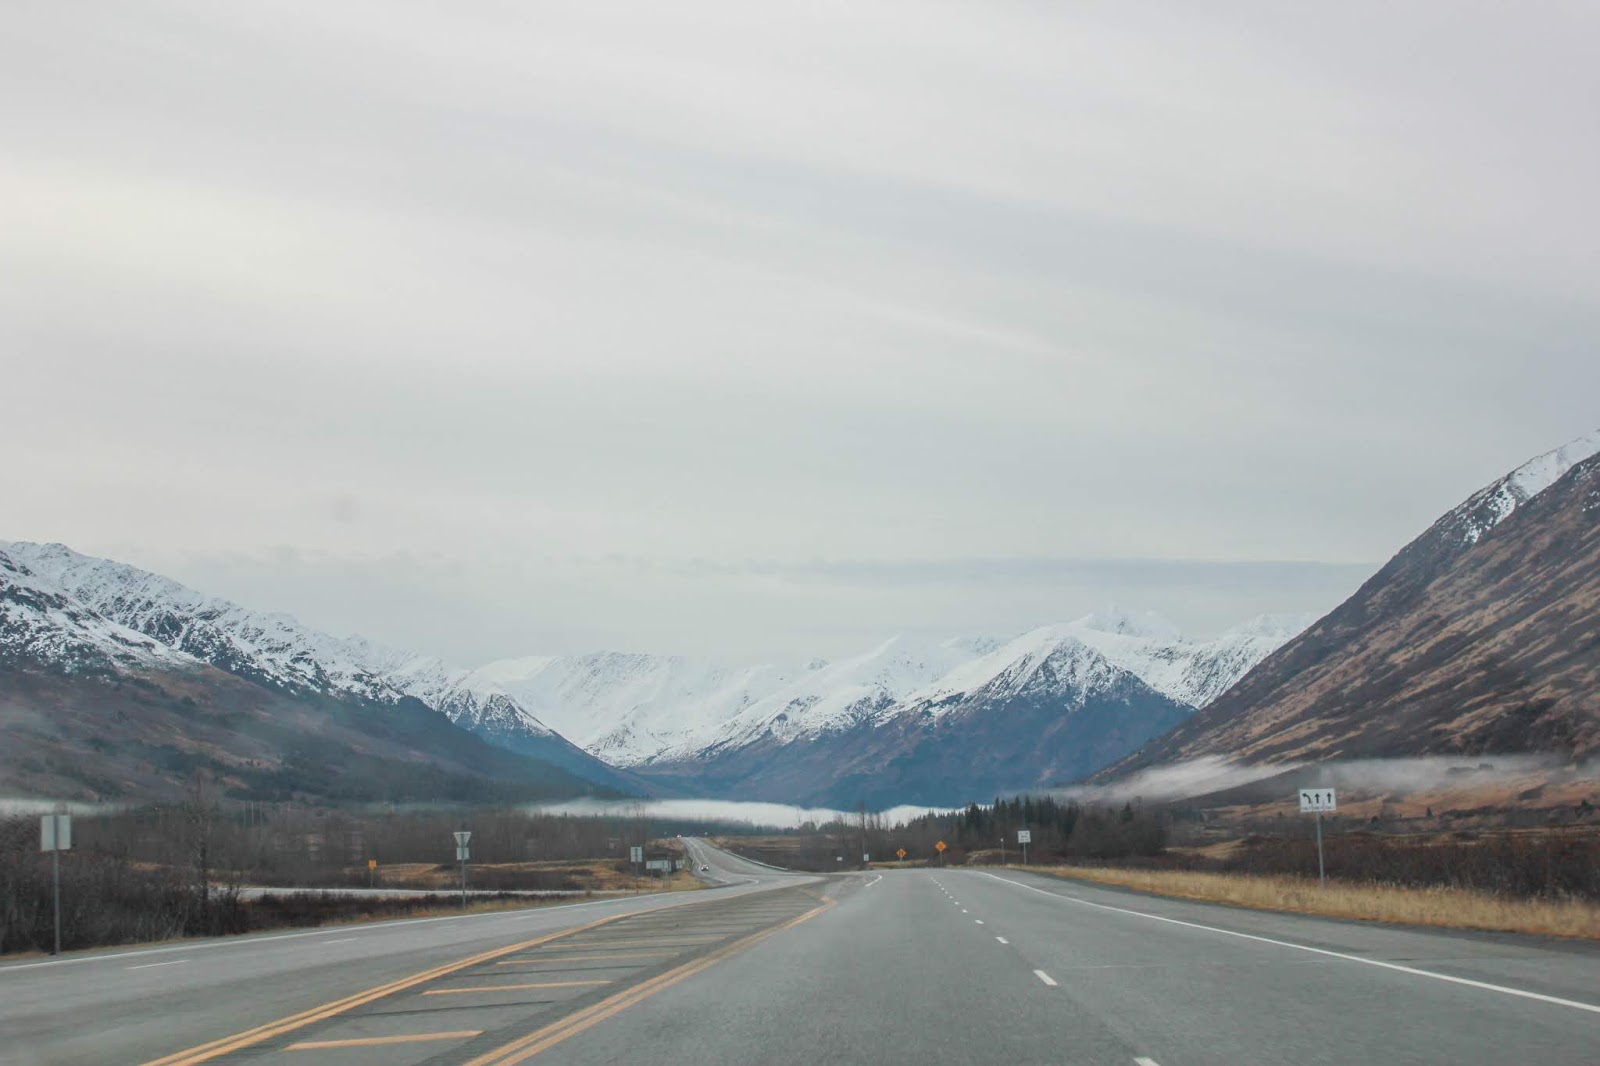 Road Trip along the Seward Highway from Anchorage to Seward, Alaska 